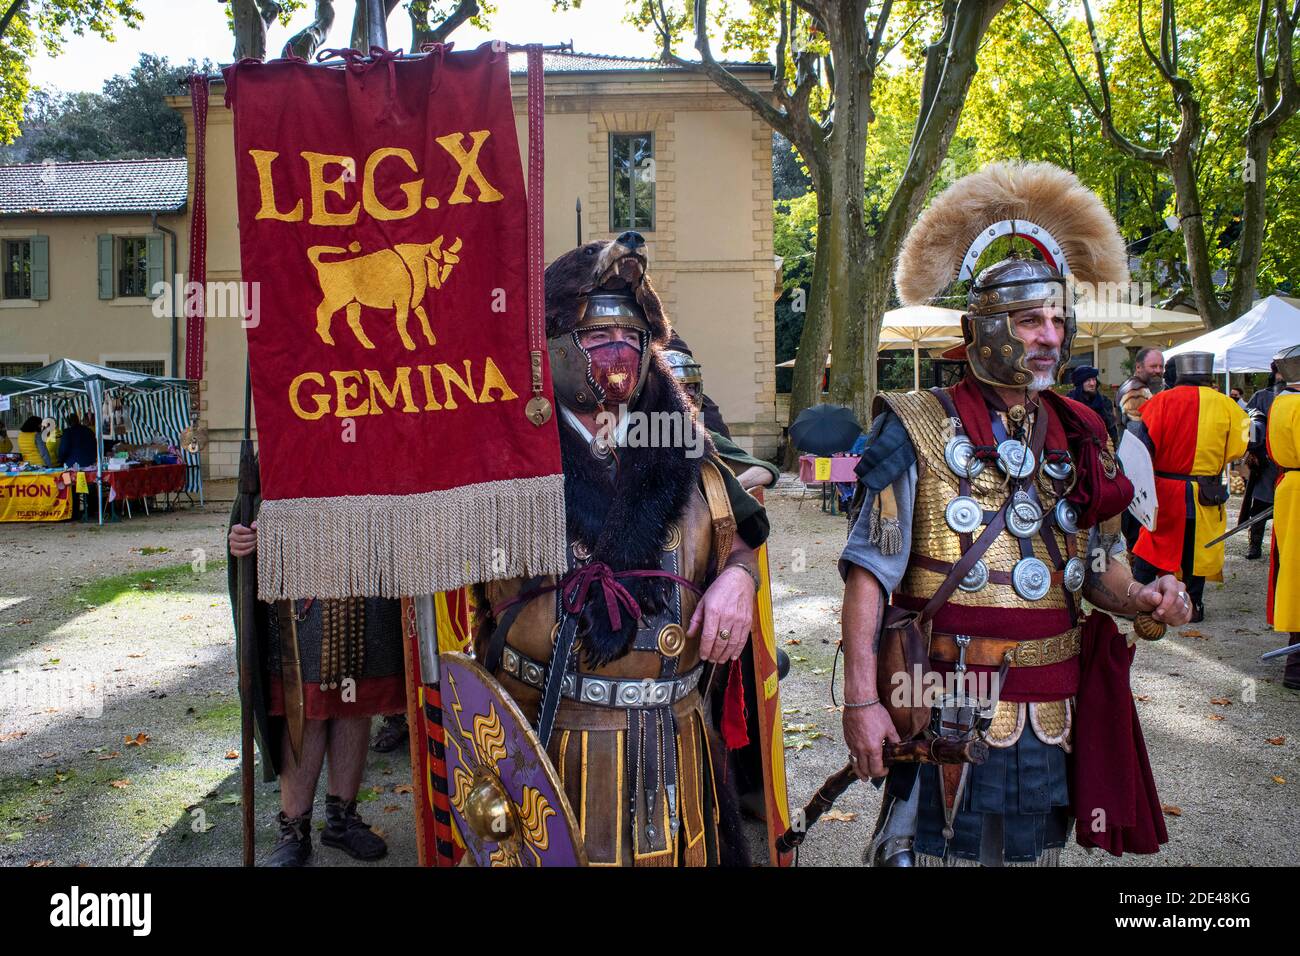 Persone vestite come legione romana a Pont du Gard, regione Languedoc Roussillon, Francia, patrimonio mondiale dell'UNESCO. L'acquedotto romano attraversa il fiume G. Foto Stock